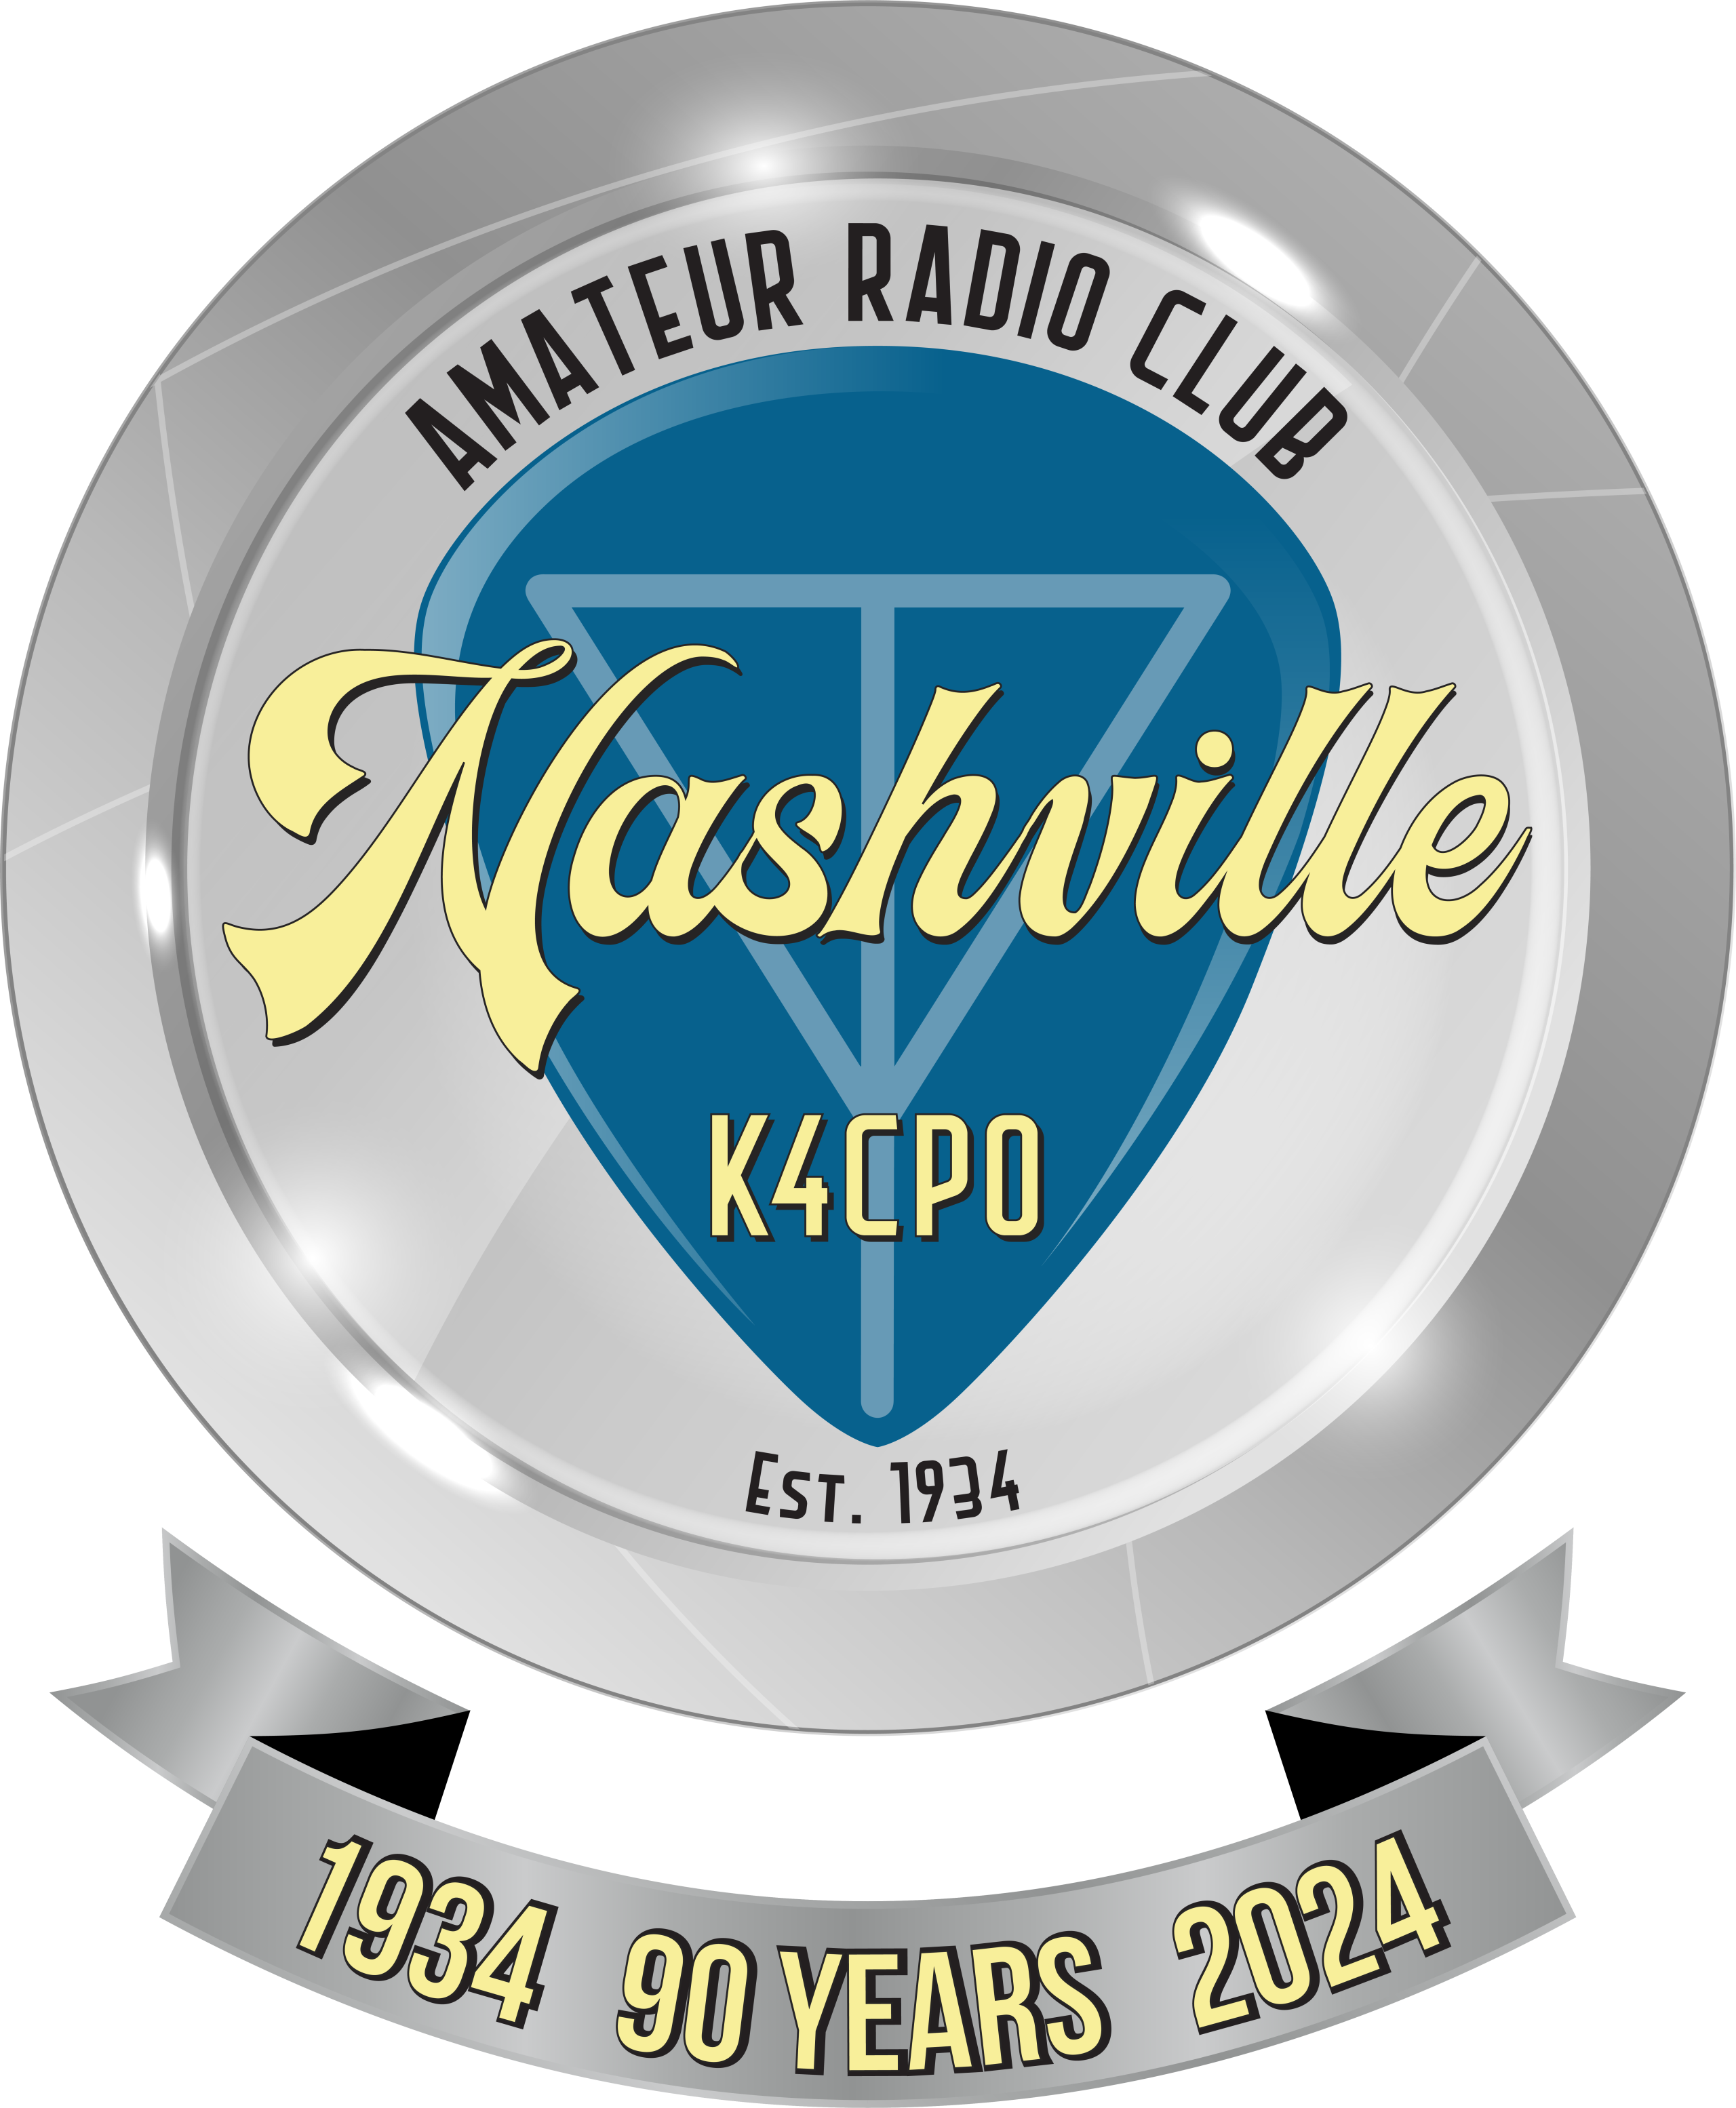 Nashville Amateur Radio Club